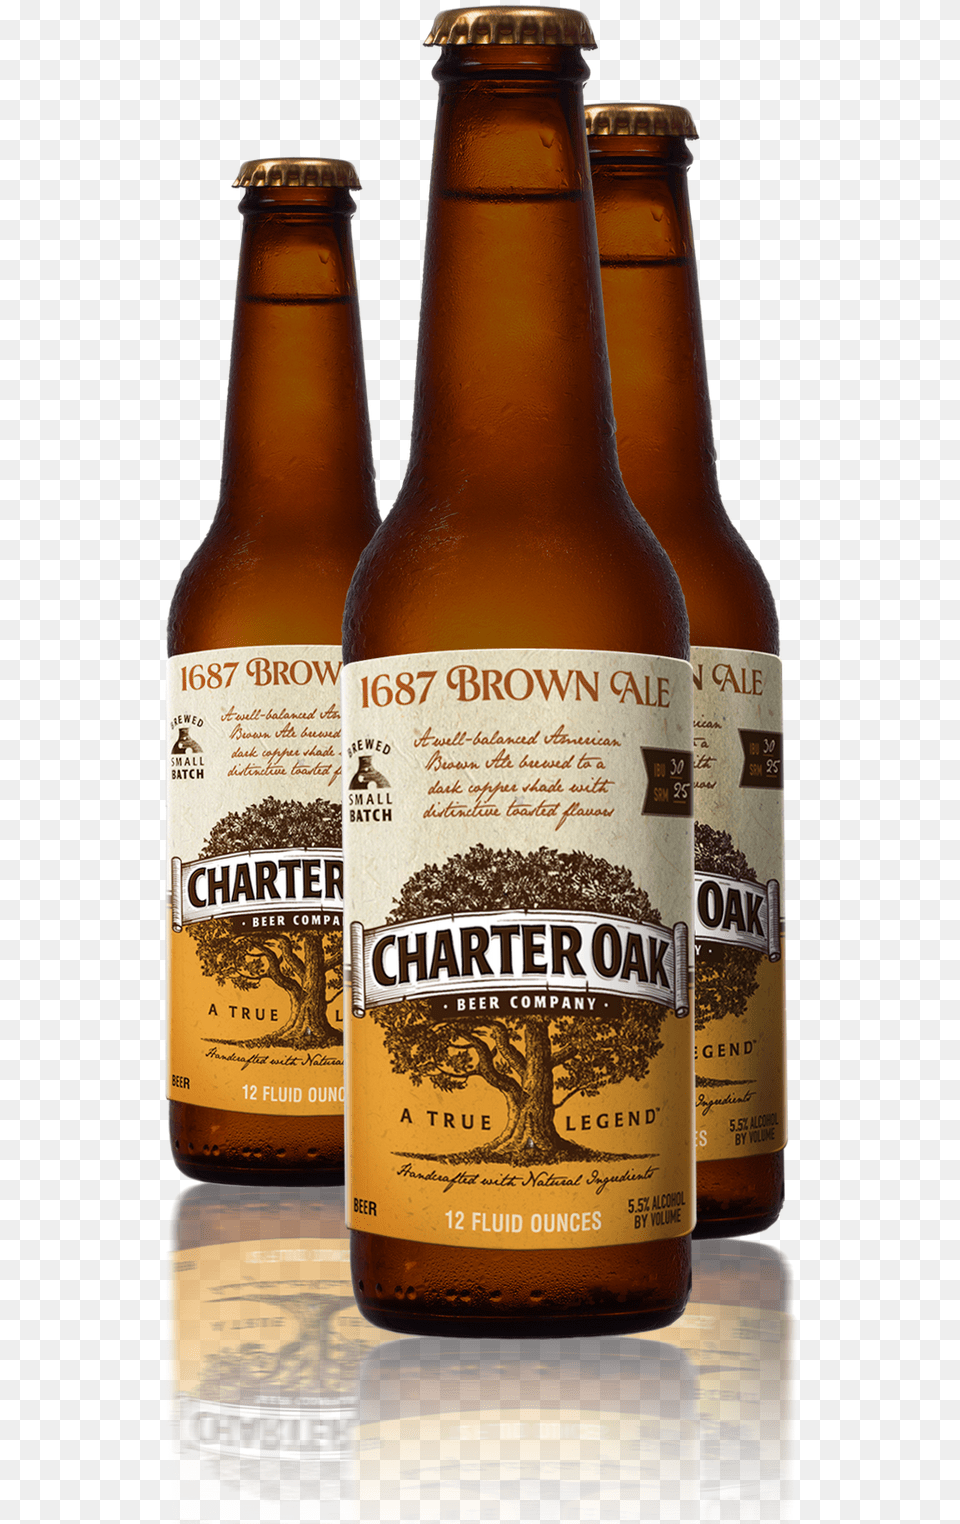 Budweiser Bottle 1687 Brown Ale Charter Oak Brewing Co, Alcohol, Beer, Beer Bottle, Beverage Free Transparent Png